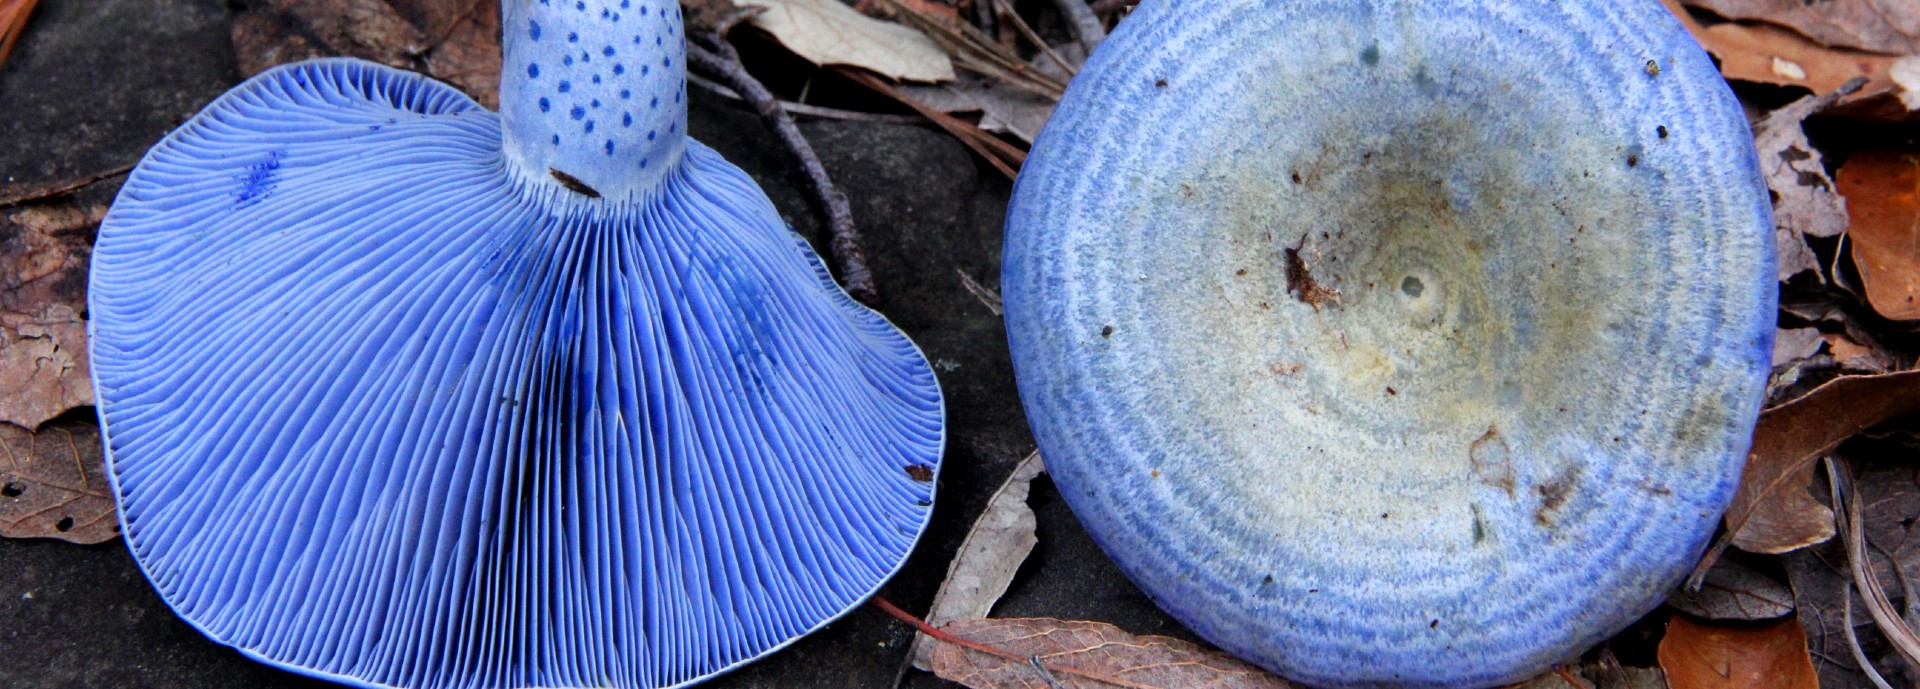 Blue-coloured Lactarius indigo mushroom in leaves